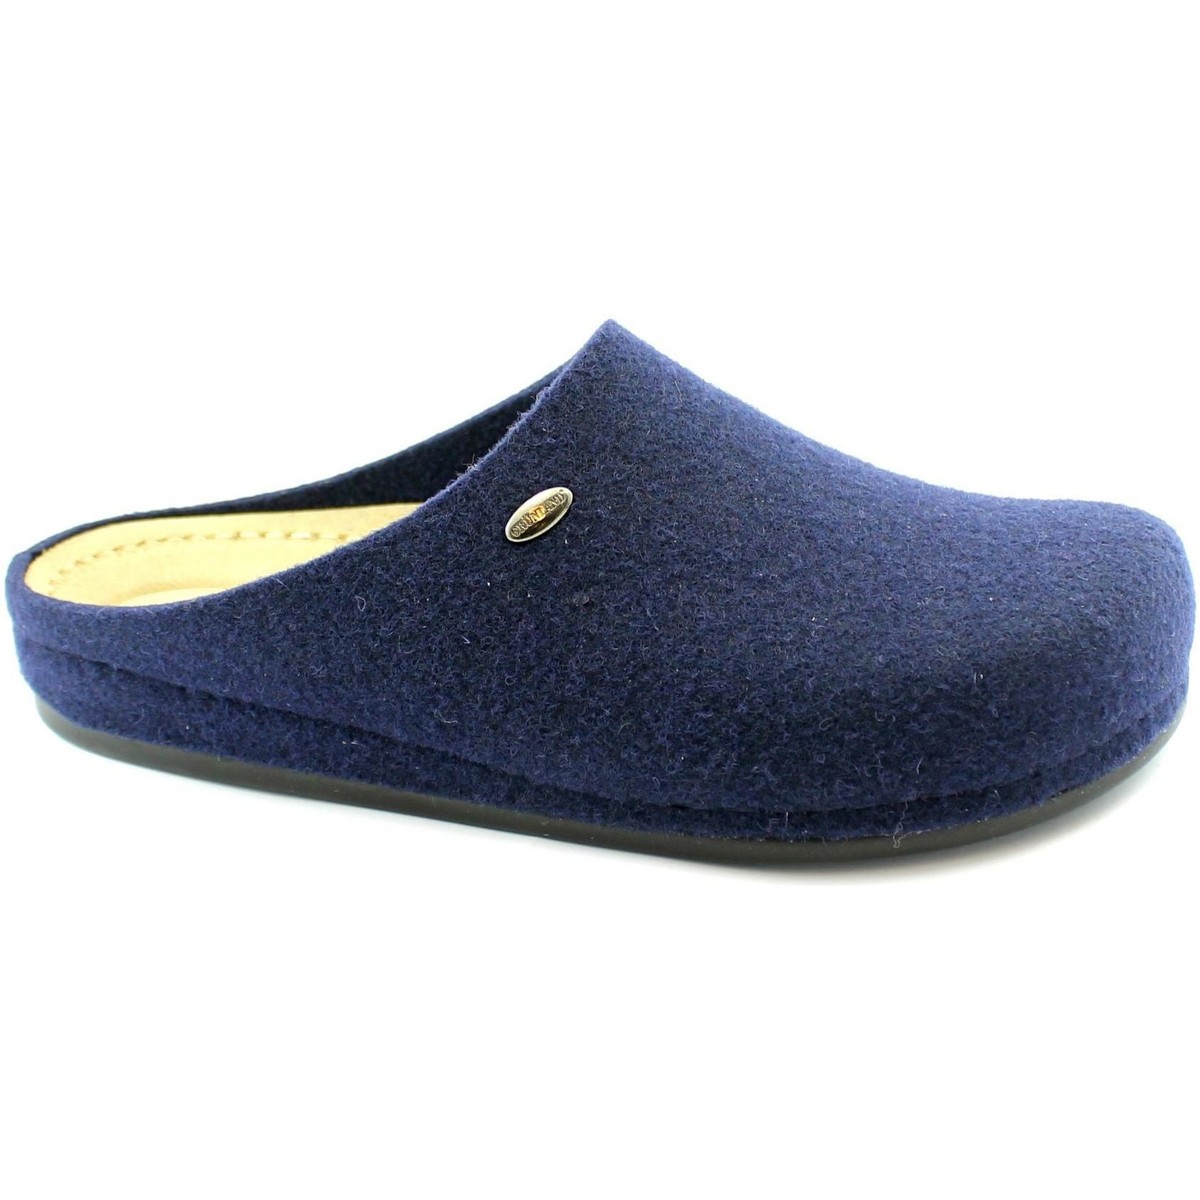 Sapatos Homem Chinelos Grunland GRU-I20-CI2734-NA Azul